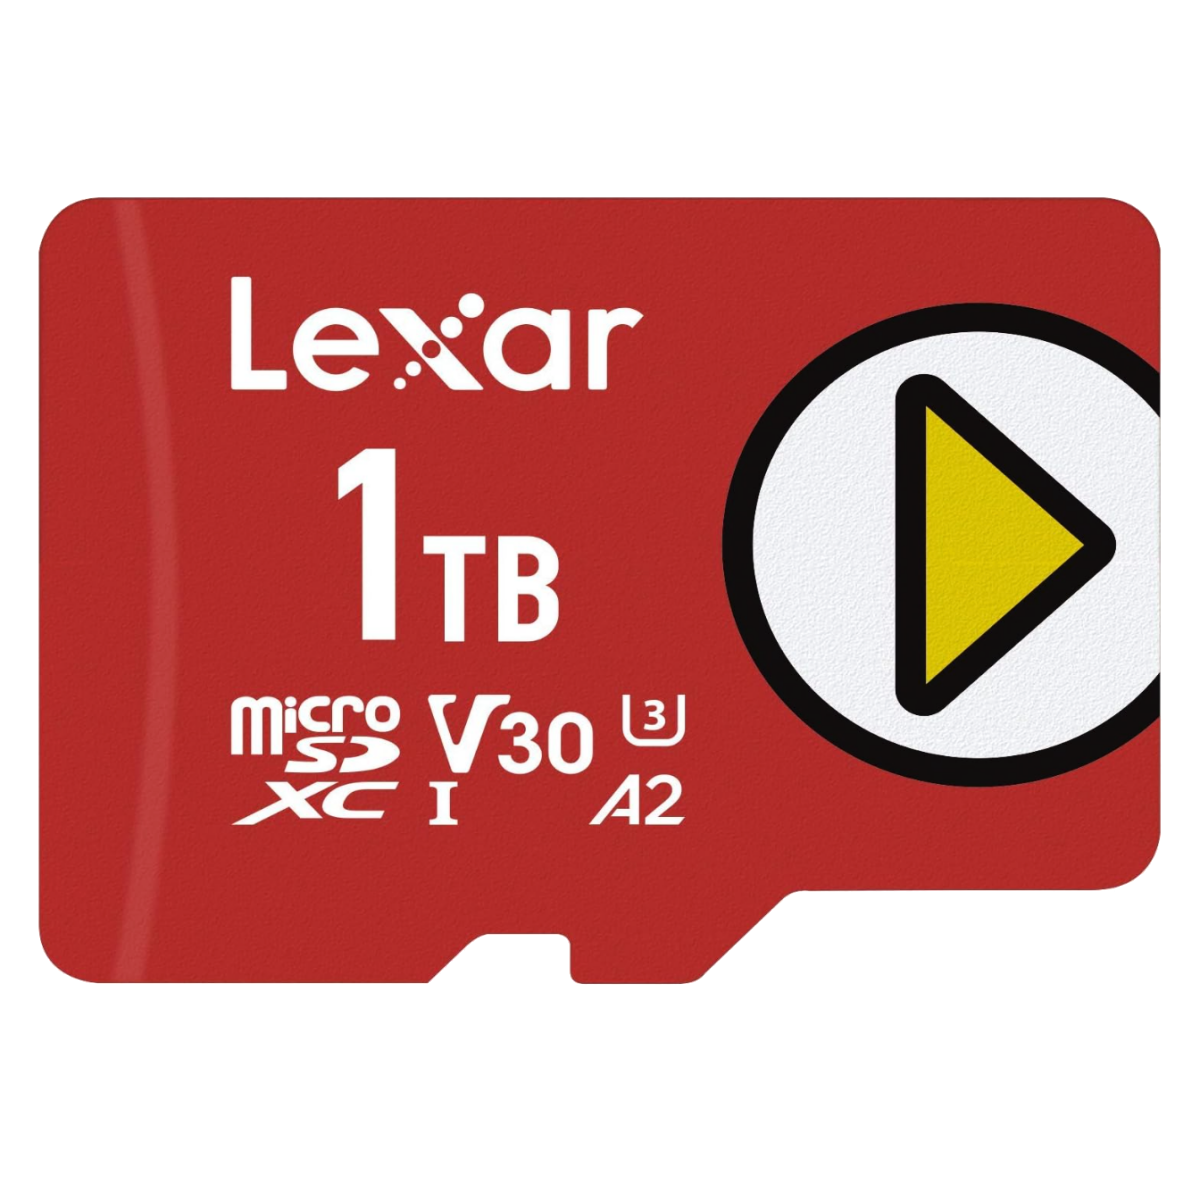 A Lexar Play 1TB microSDXC UHS-I card